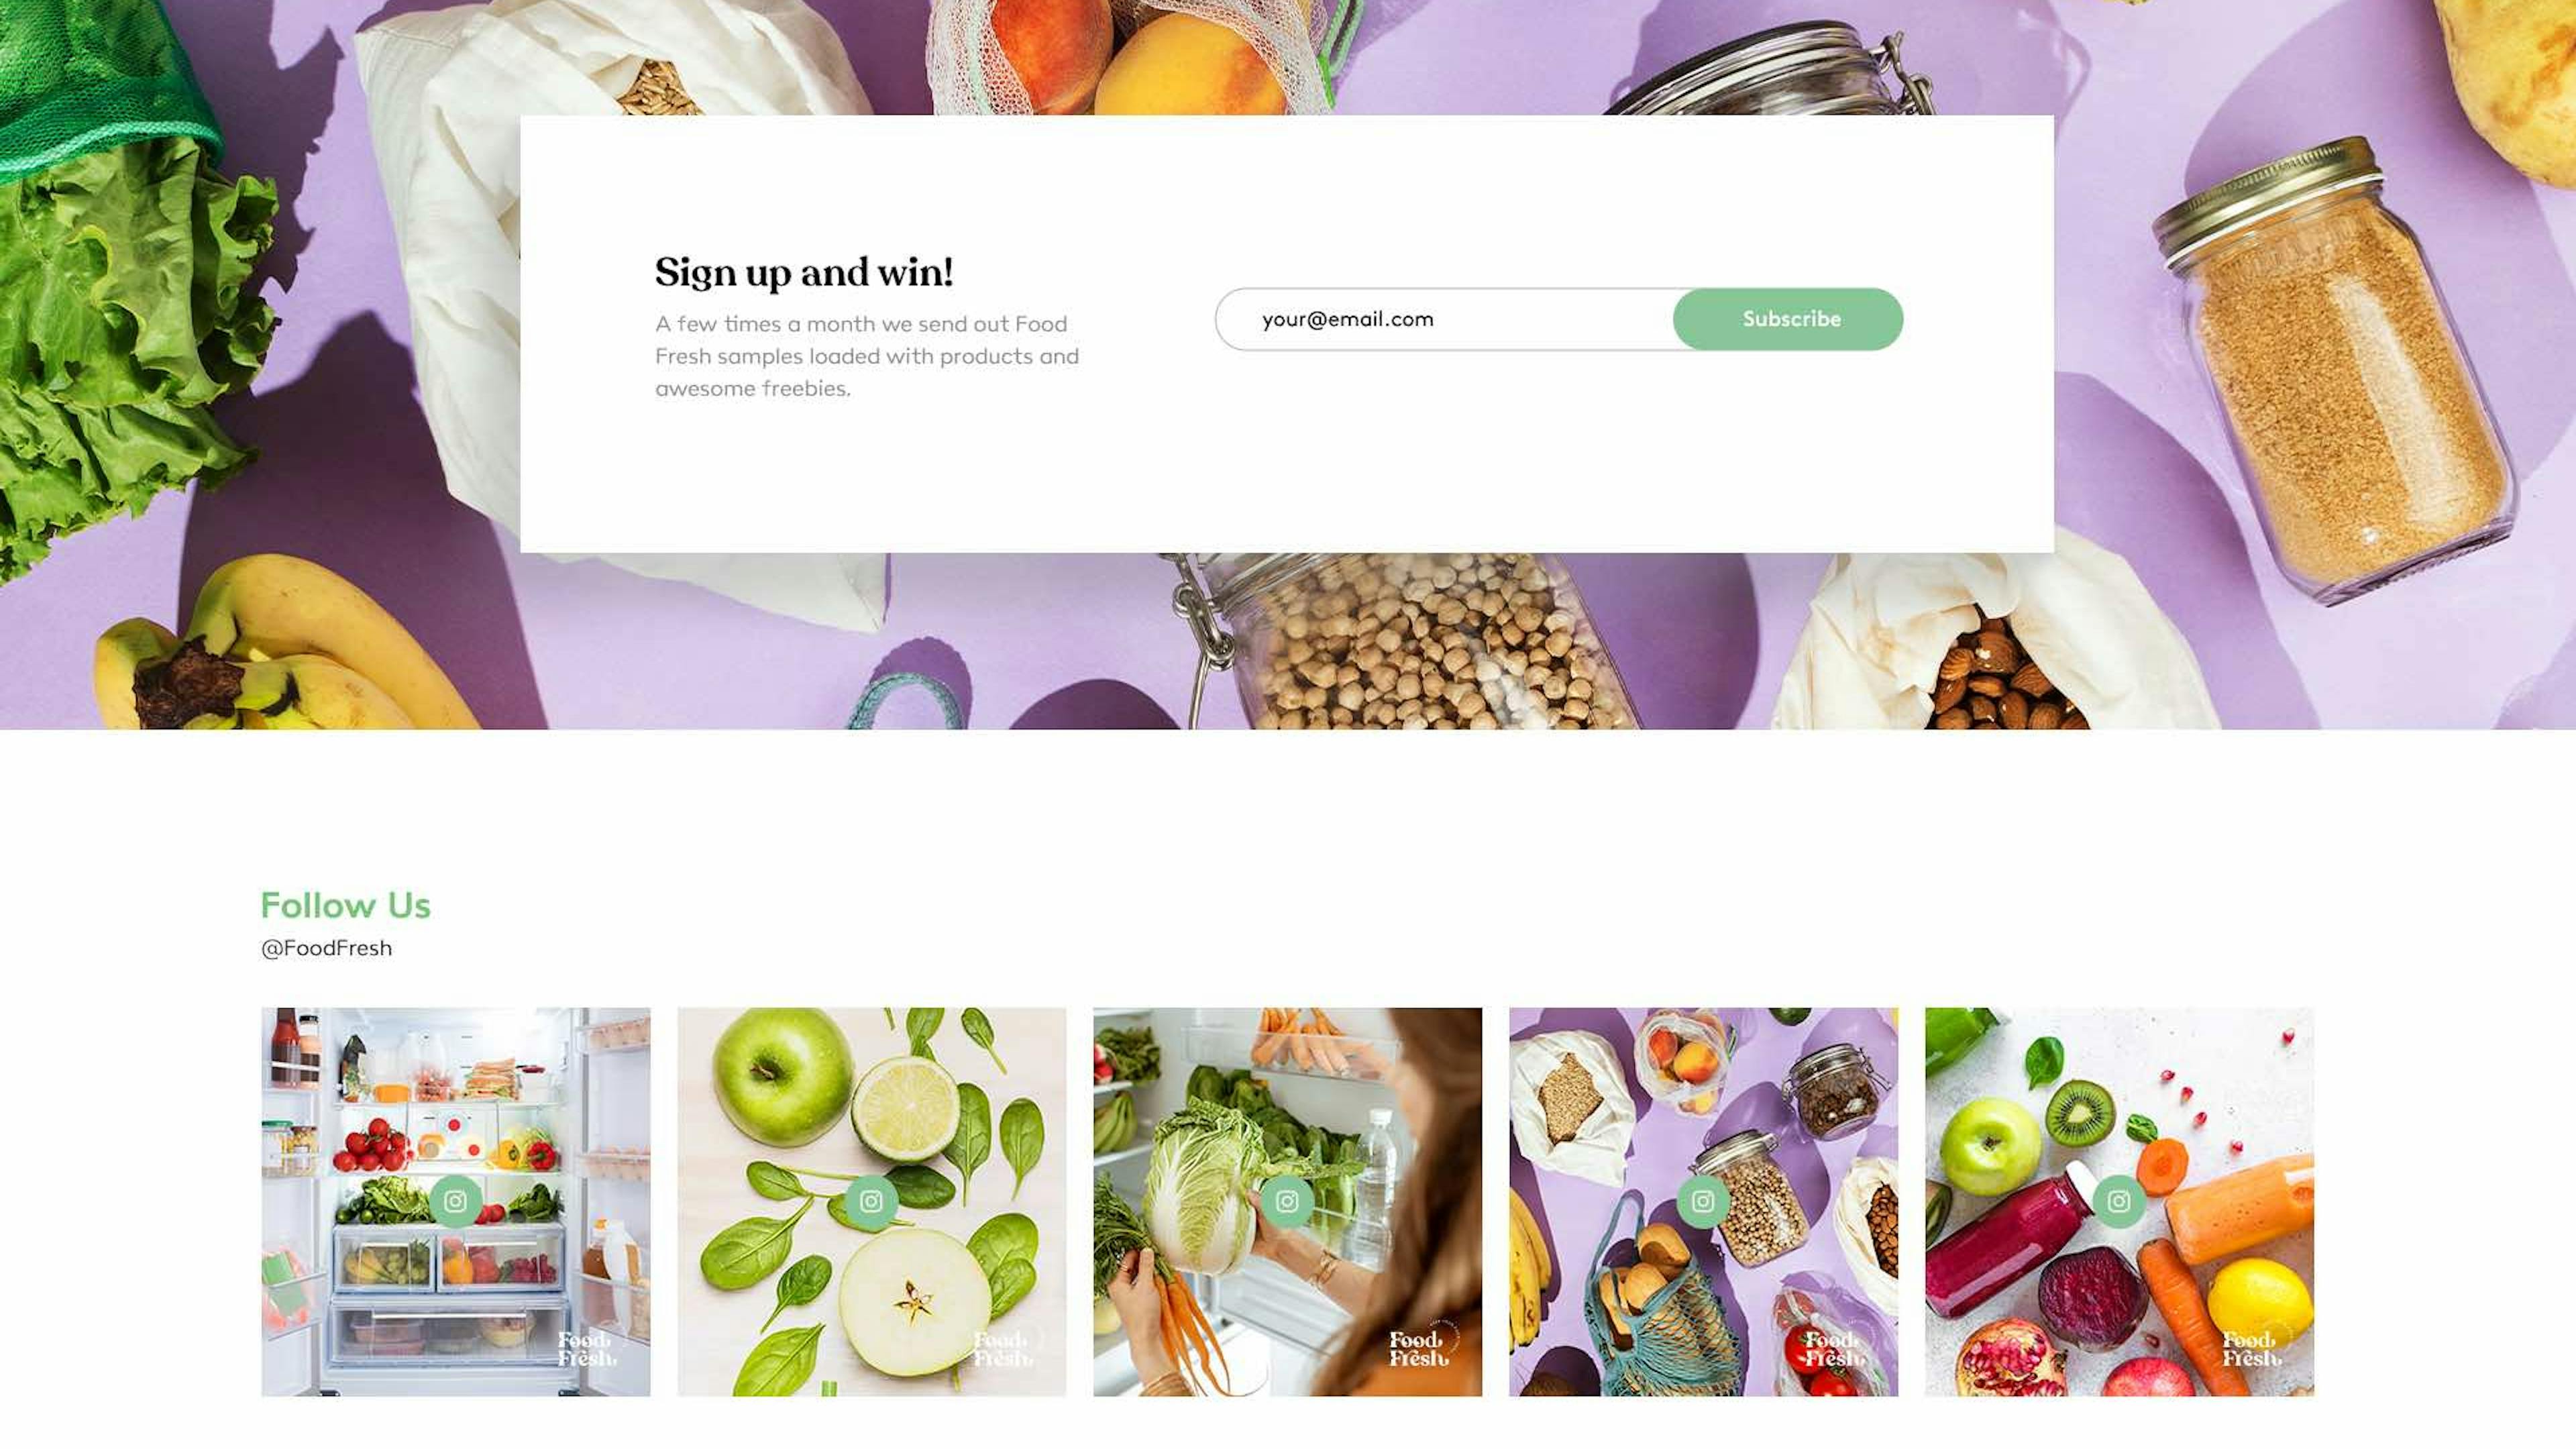 Food Fresh website homepage